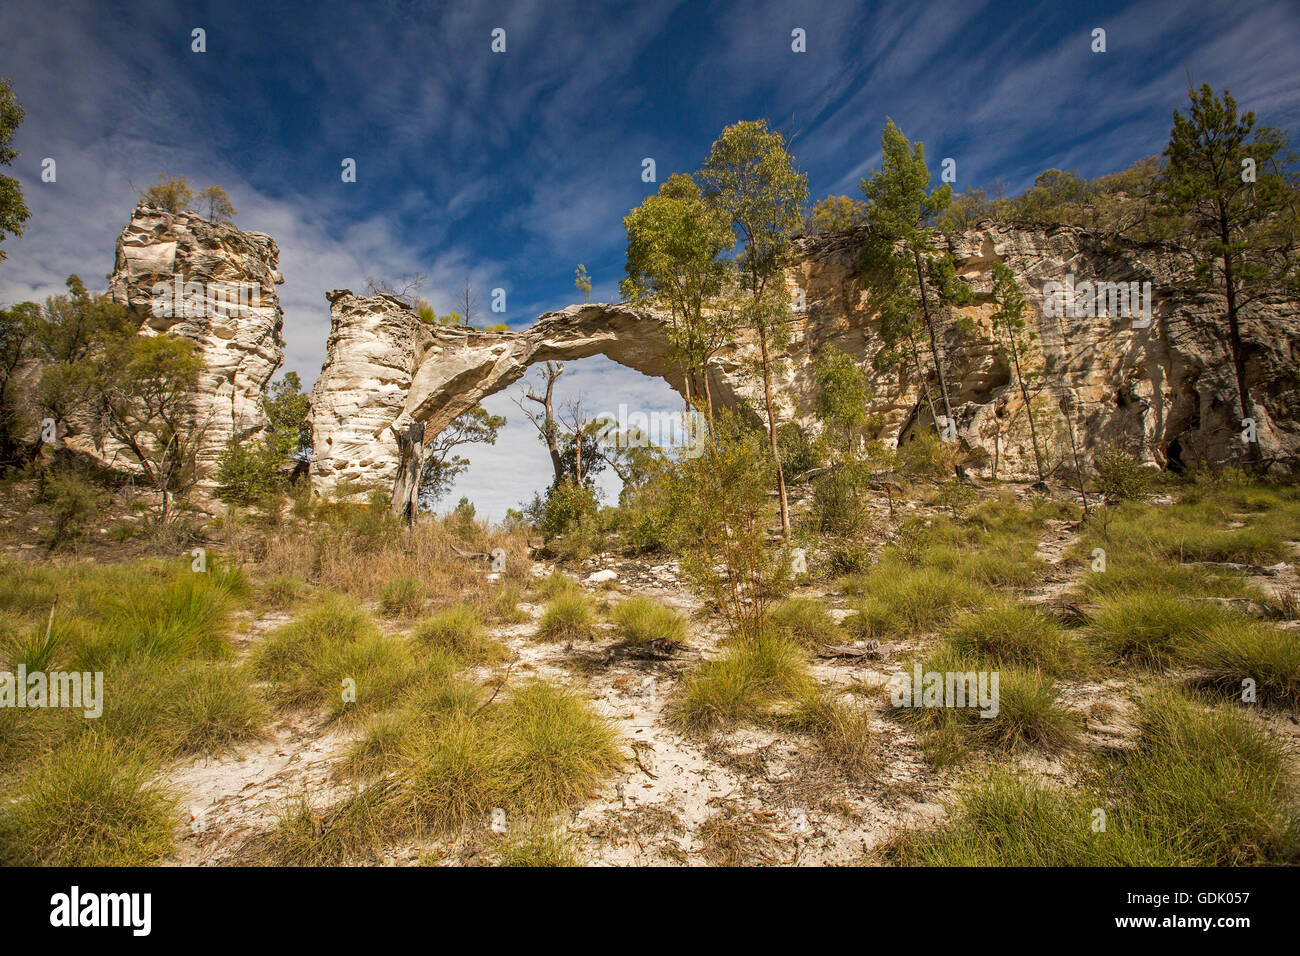 Grès naturel arch à Mount Moffatt / Carnarvon National Park in Australian Outback paysage de touffes d'herbe et des arbres dans le ciel bleu Banque D'Images